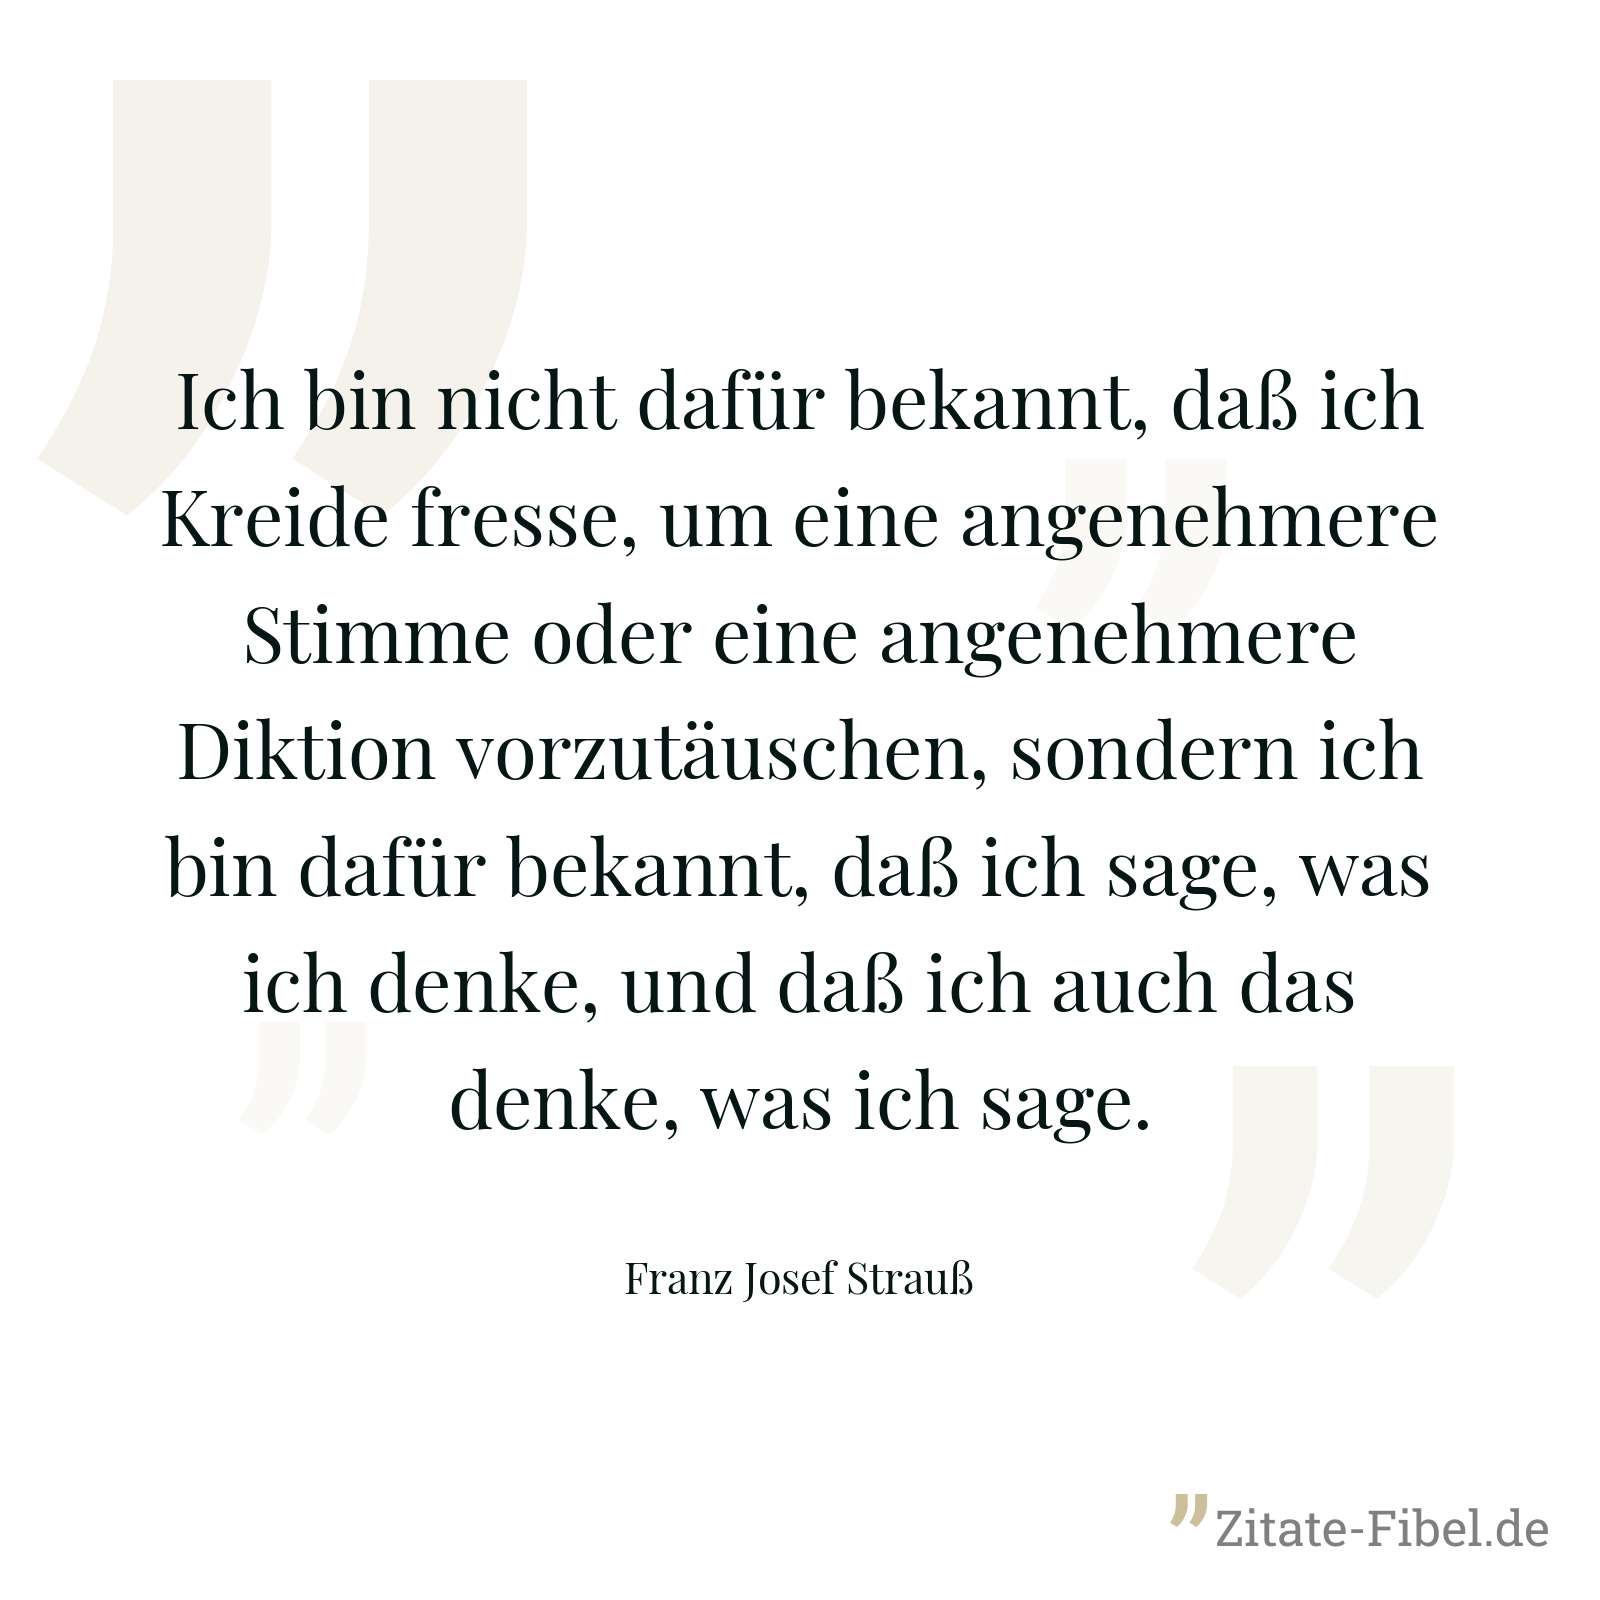 Ich bin nicht dafür bekannt, daß ich Kreide fresse, um eine angenehmere Stimme oder eine angenehmere Diktion vorzutäuschen, sondern ich bin dafür bekannt, daß ich sage, was ich denke, und daß ich auch das denke, was ich sage. - Franz Josef Strauß